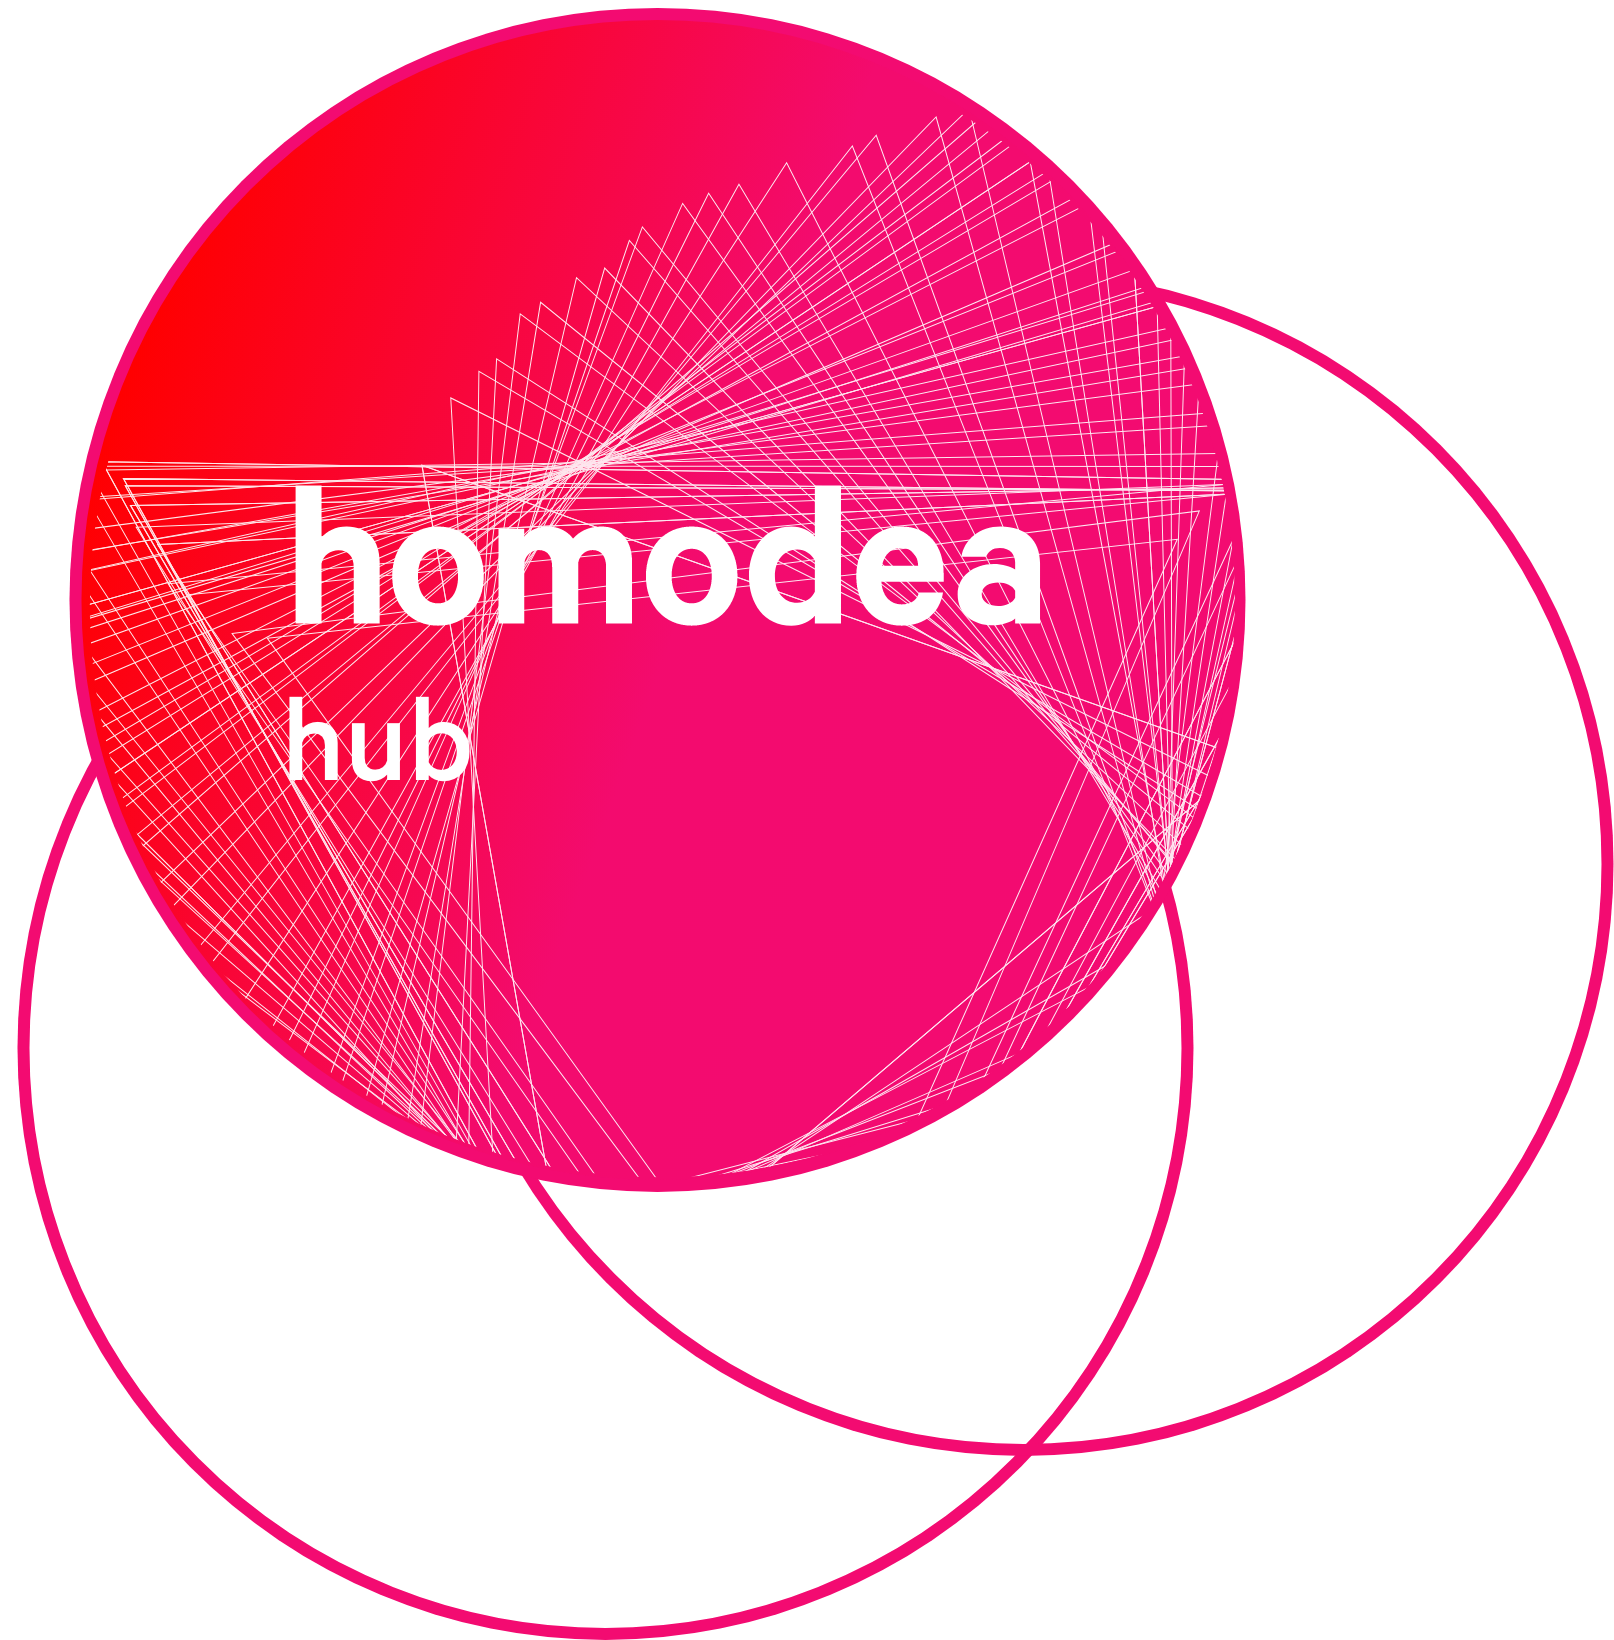 homodea hub logo